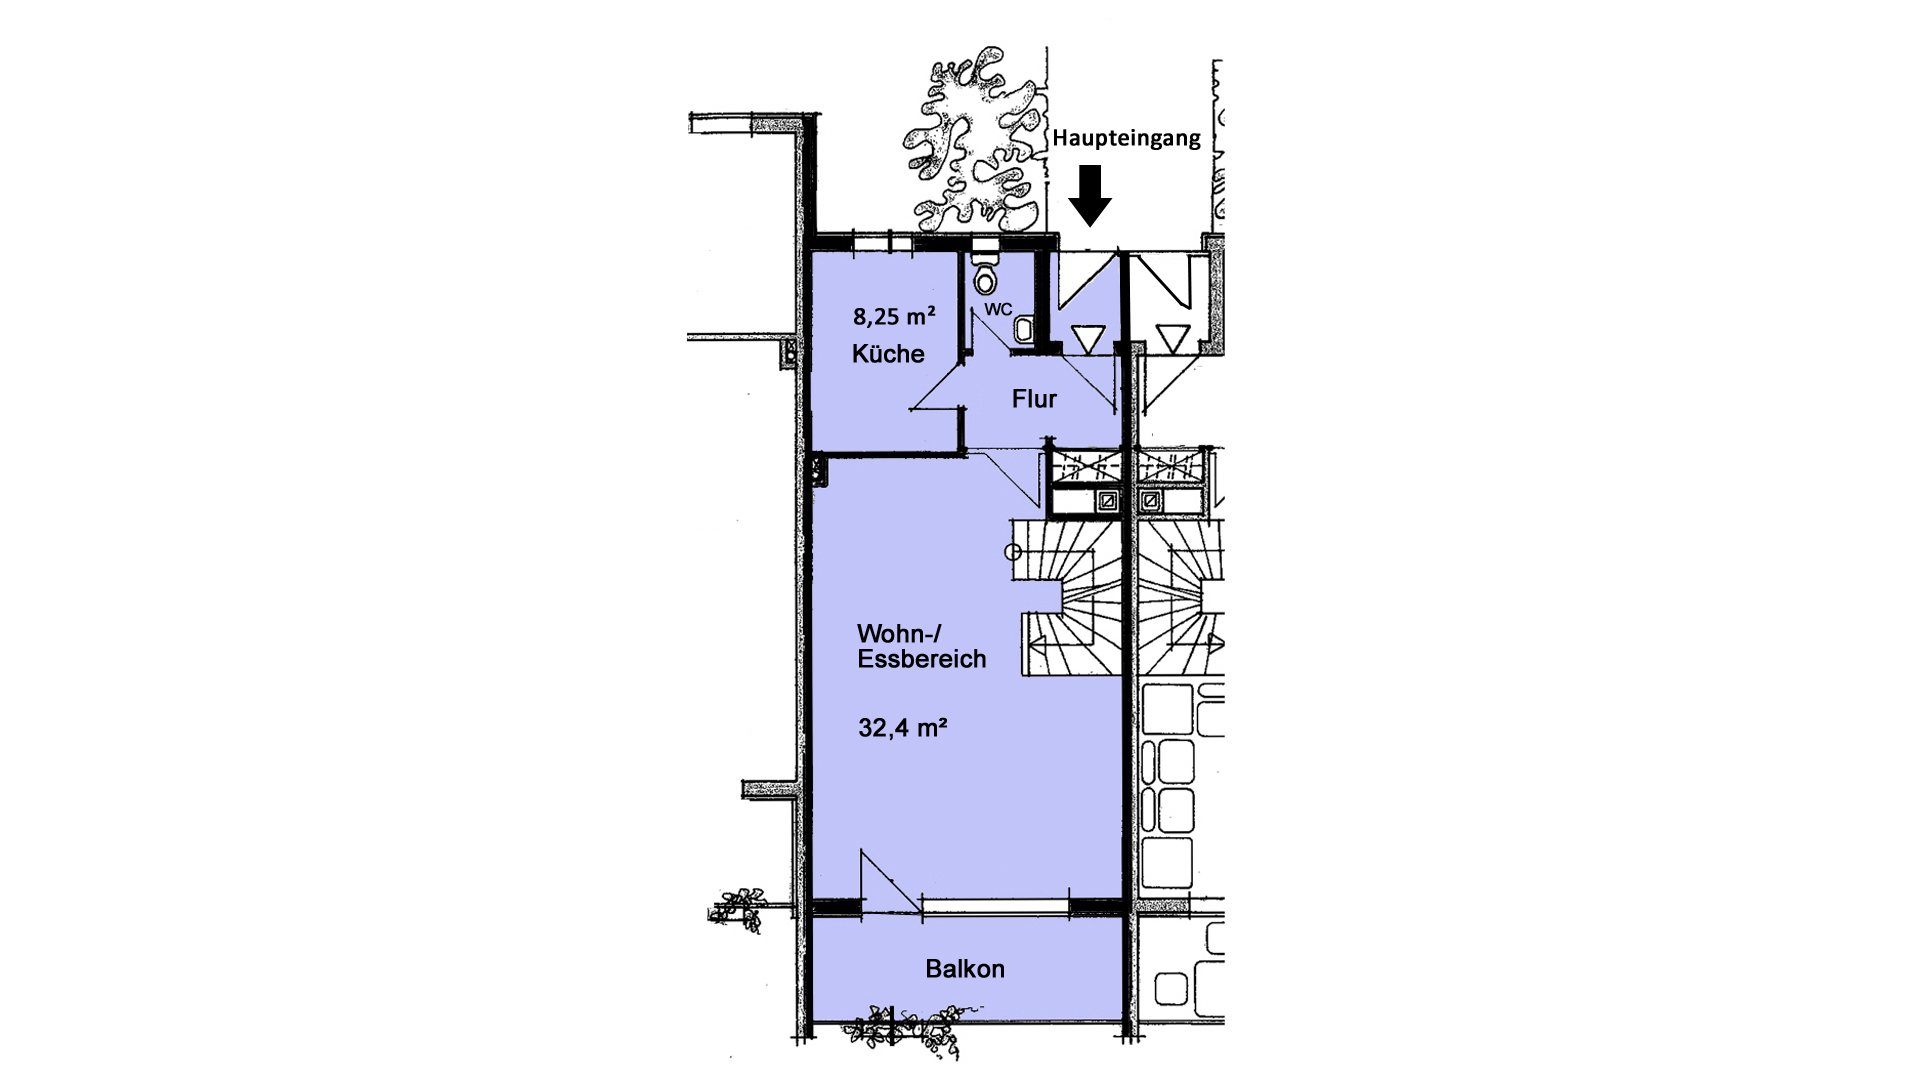 Schön und ruhig in Friesenhagen gelegen: Reihenhaus mit Appartement und Garage, EG: Wohn-/Essbereich, Küche, WC und Balkon